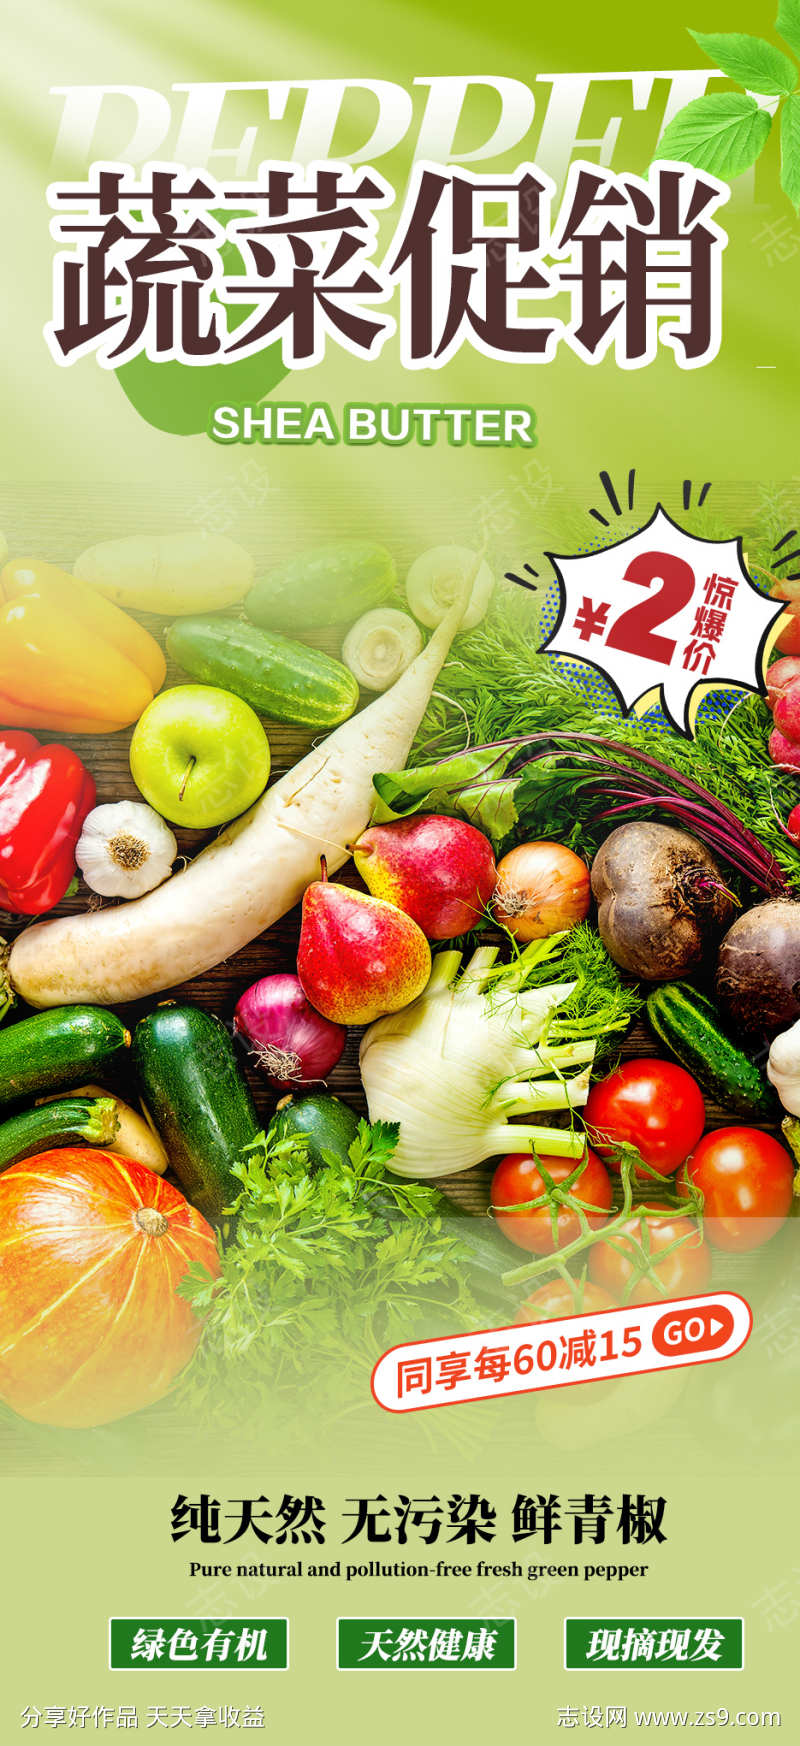 微商新鲜蔬菜美食促销活动海报